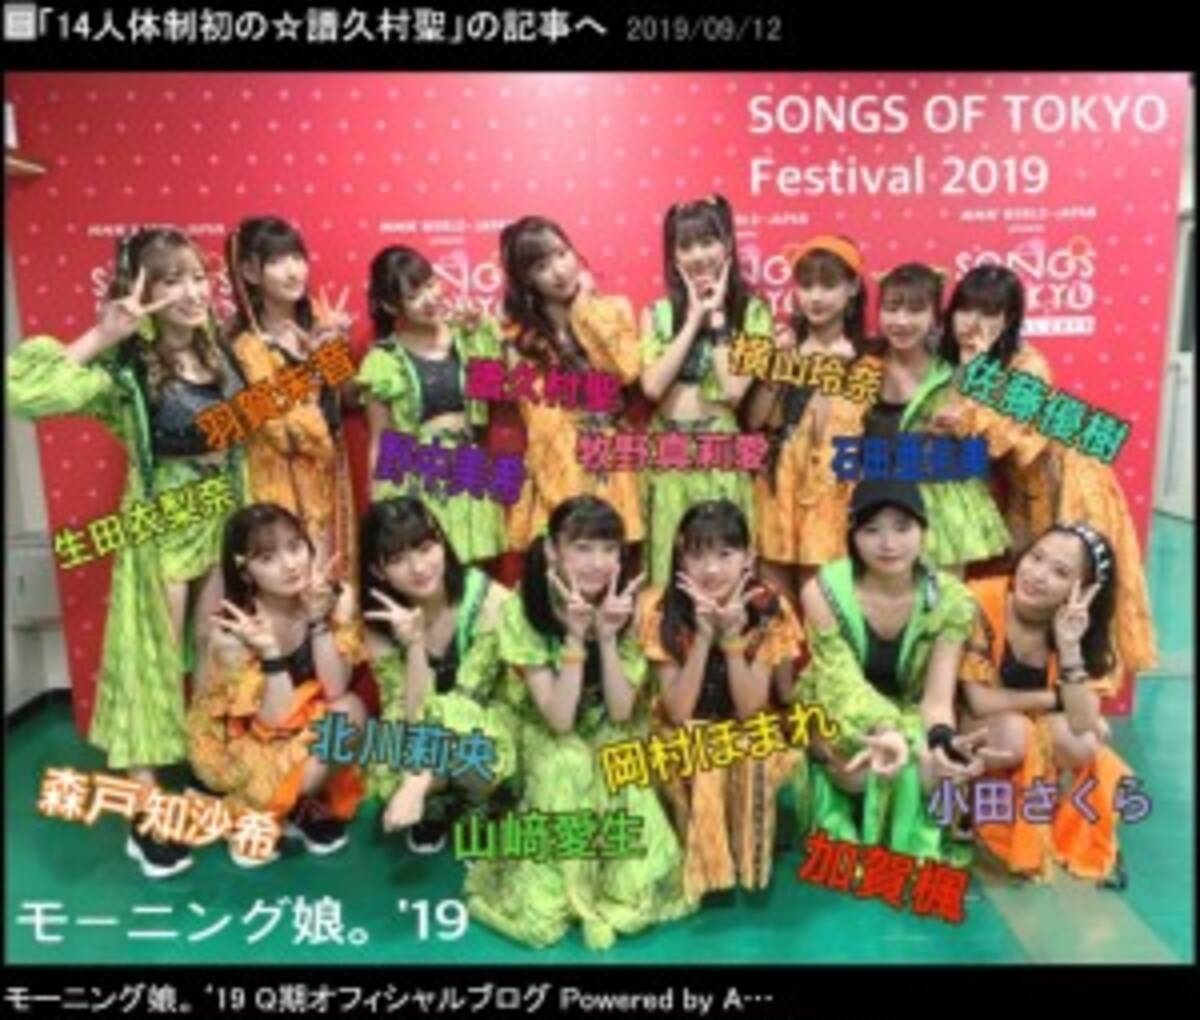 モーニング娘 19 メンバー3人がテレビ初収録 Songs Of Tokyo Festival 19 に出演 19年9月17日 エキサイトニュース